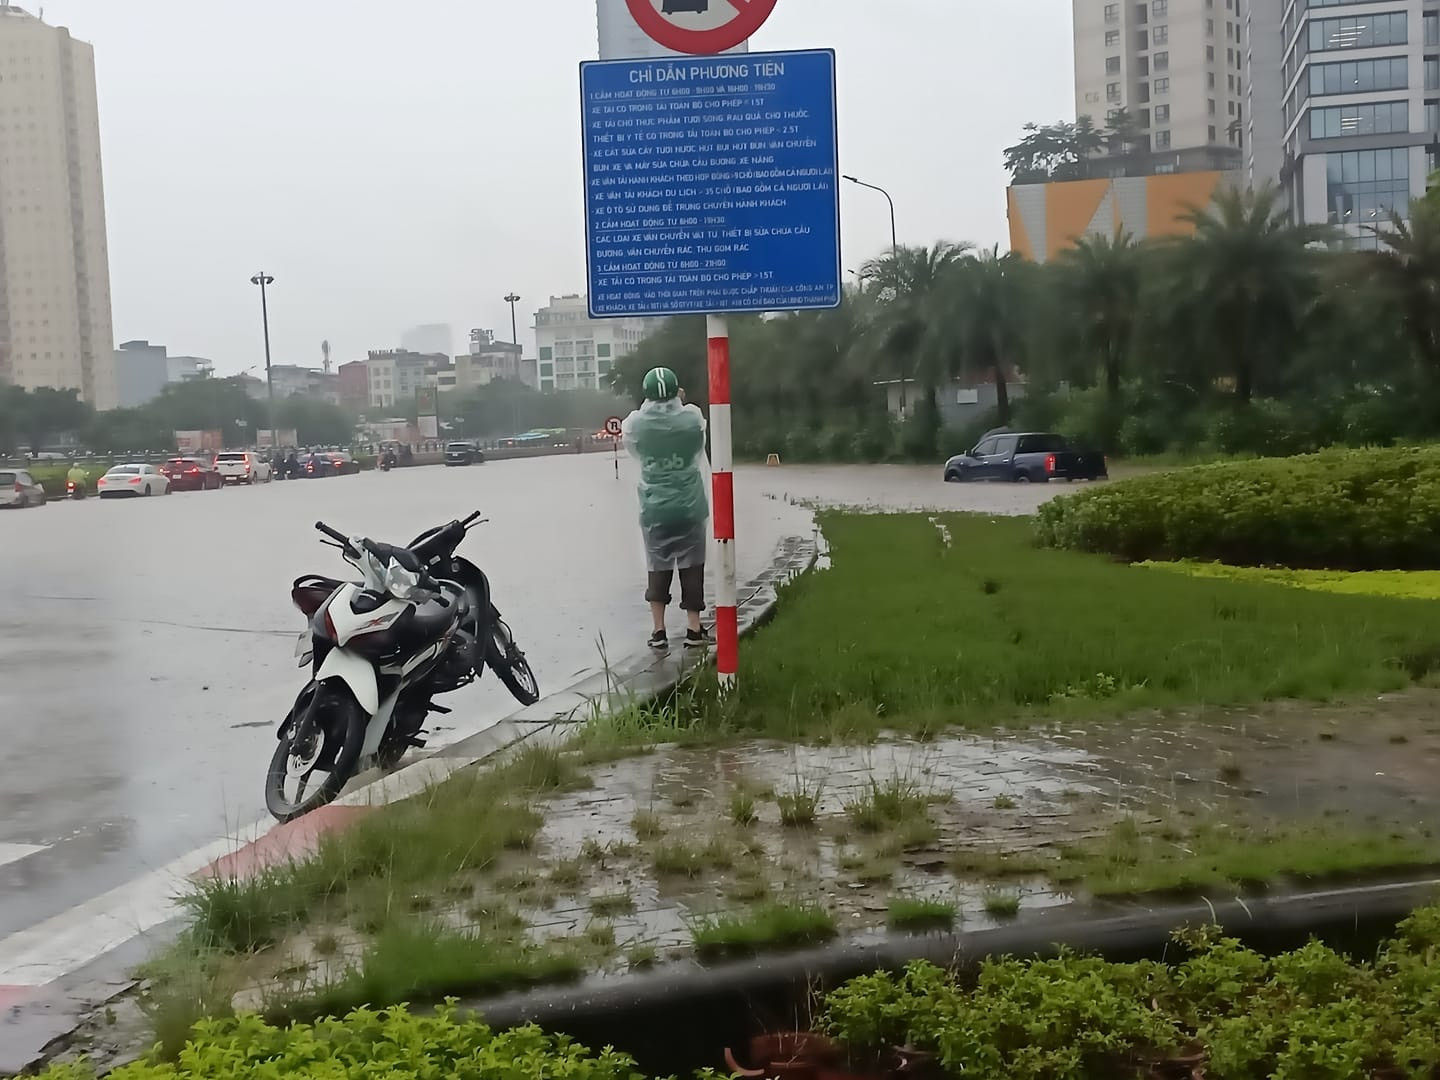 Tài xế Việt than trời, chia sẻ hình ảnh độc lạ trên đường ngày mưa ngập - 1